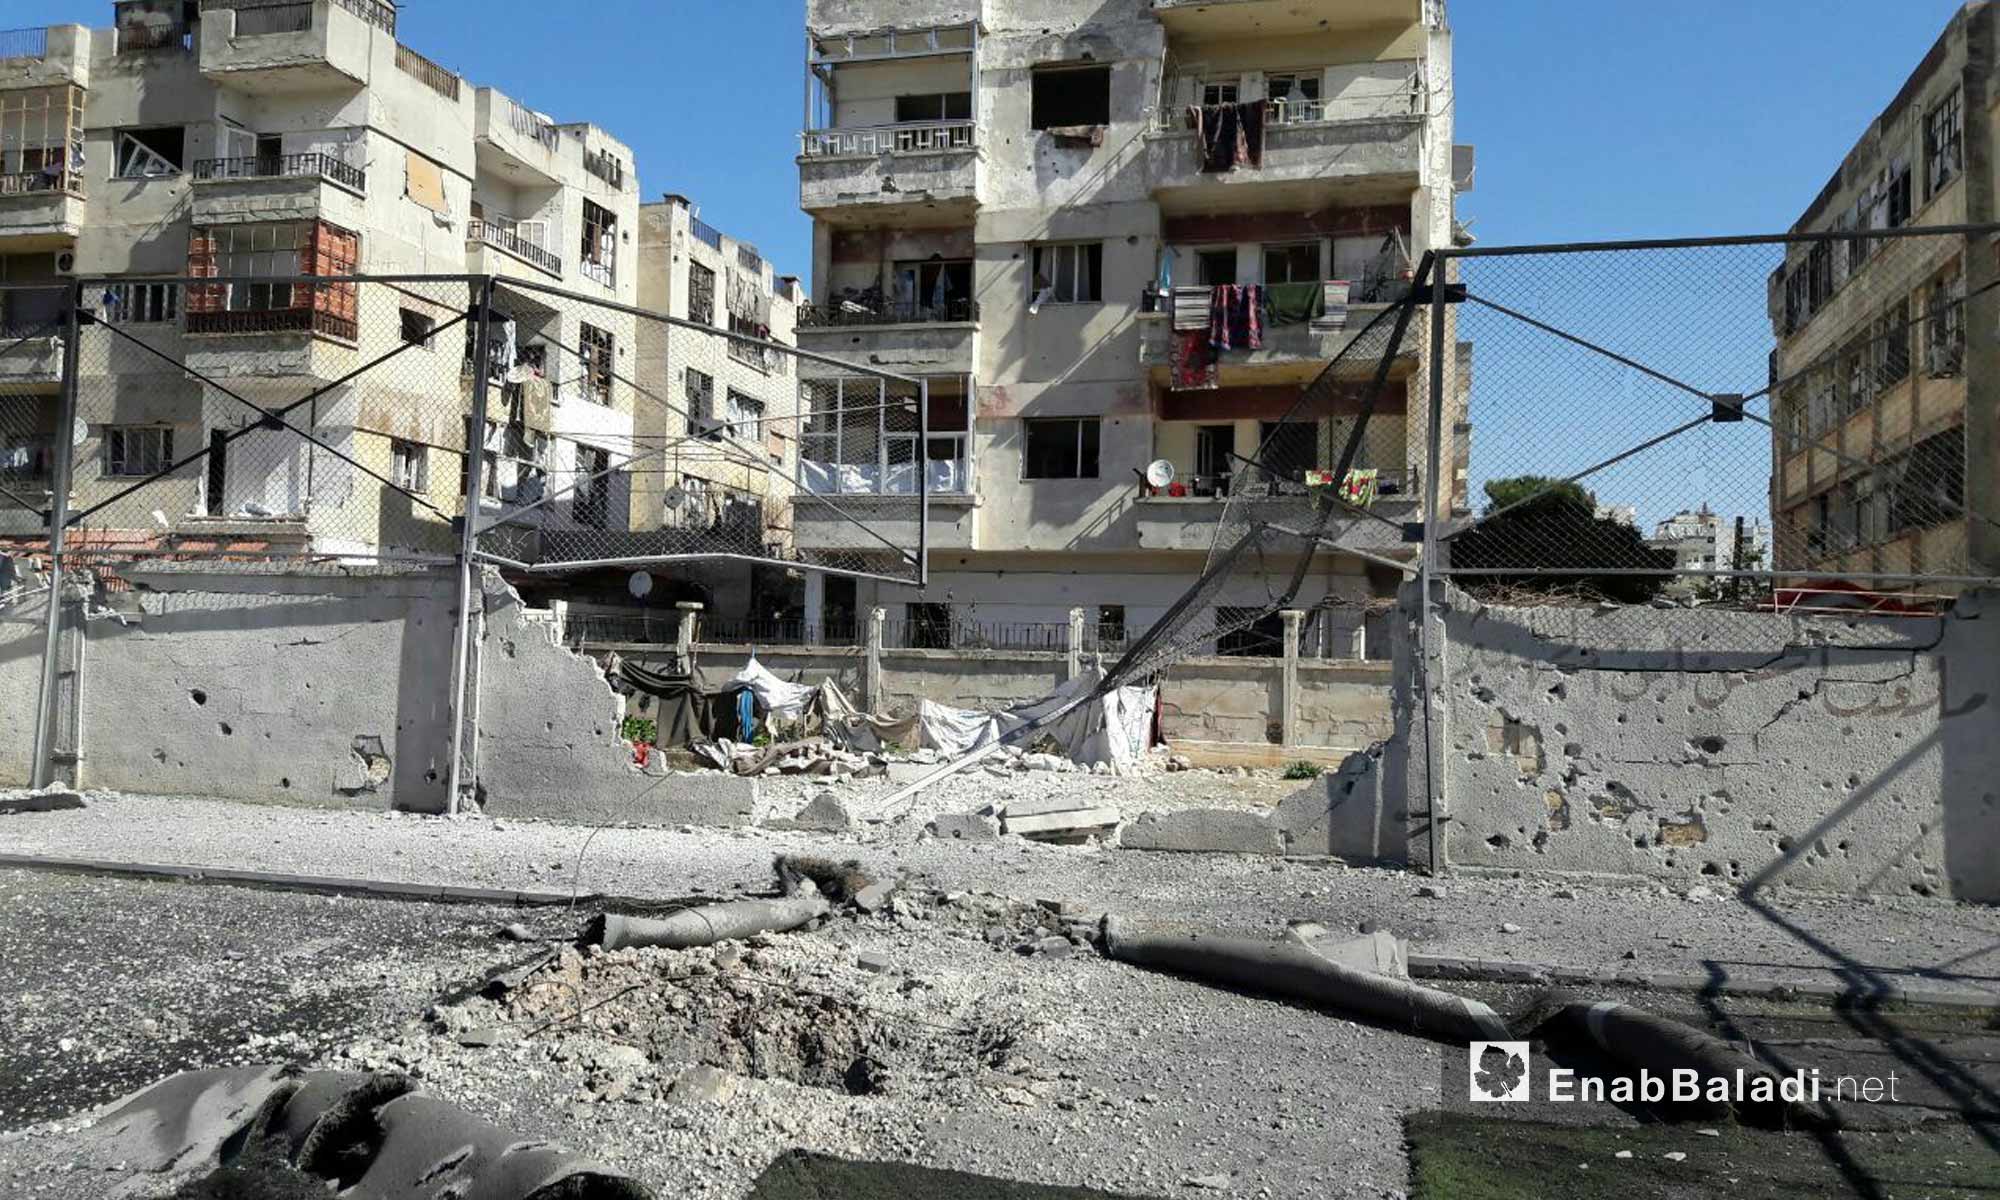 آثار قصف الطيران الحربي على حي الوعر المحاصر_17 شباط 2017_(عنب بلدي)